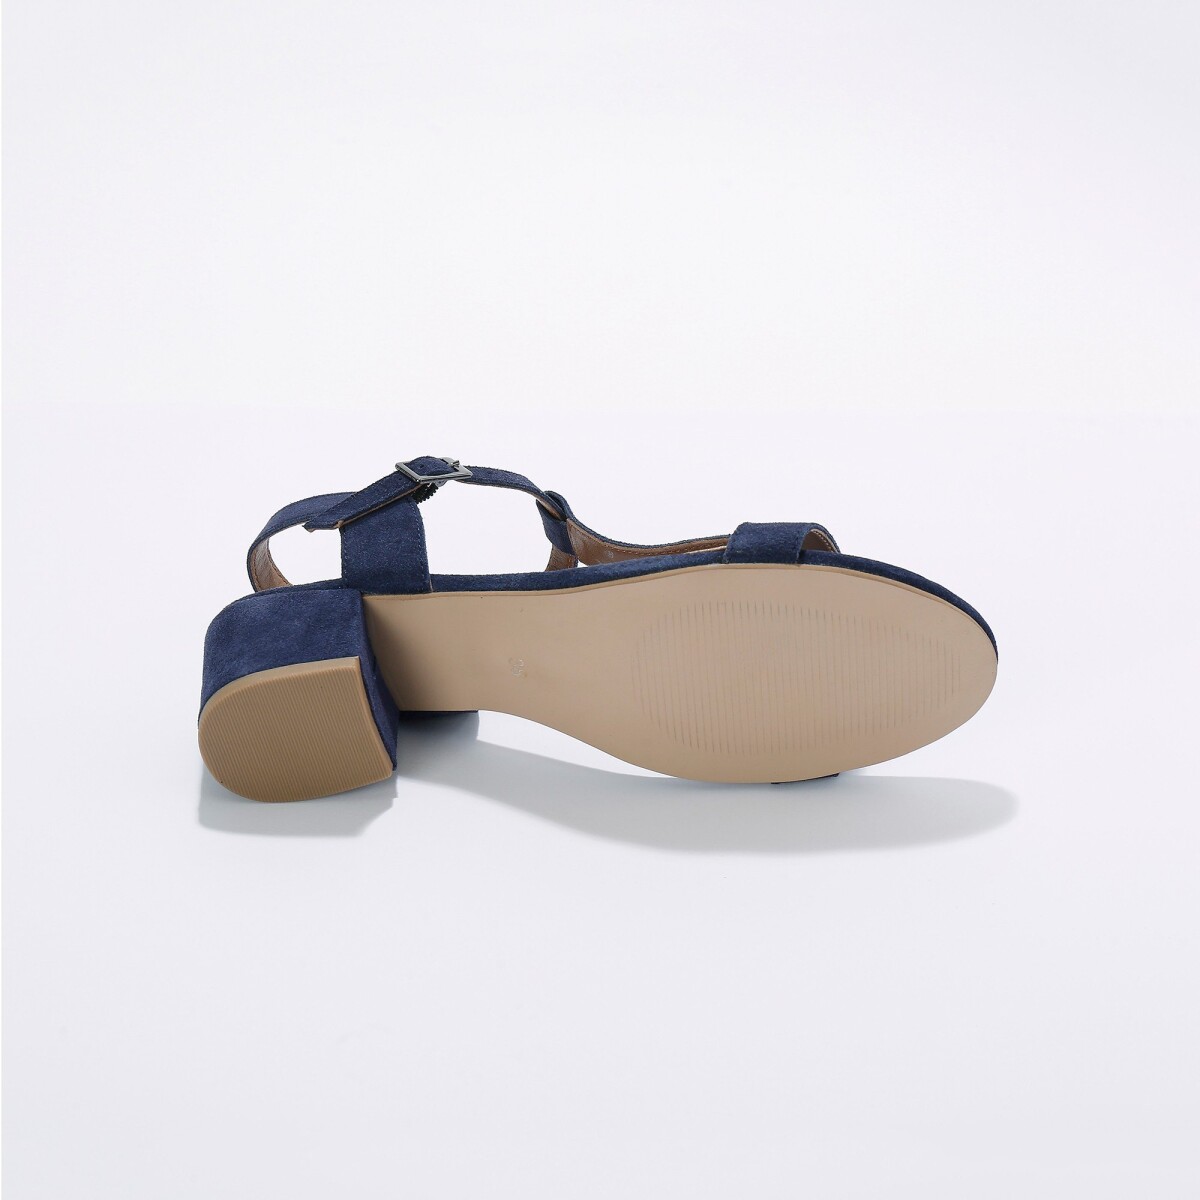 Remienkové sandále na podpätku, z kože LWG